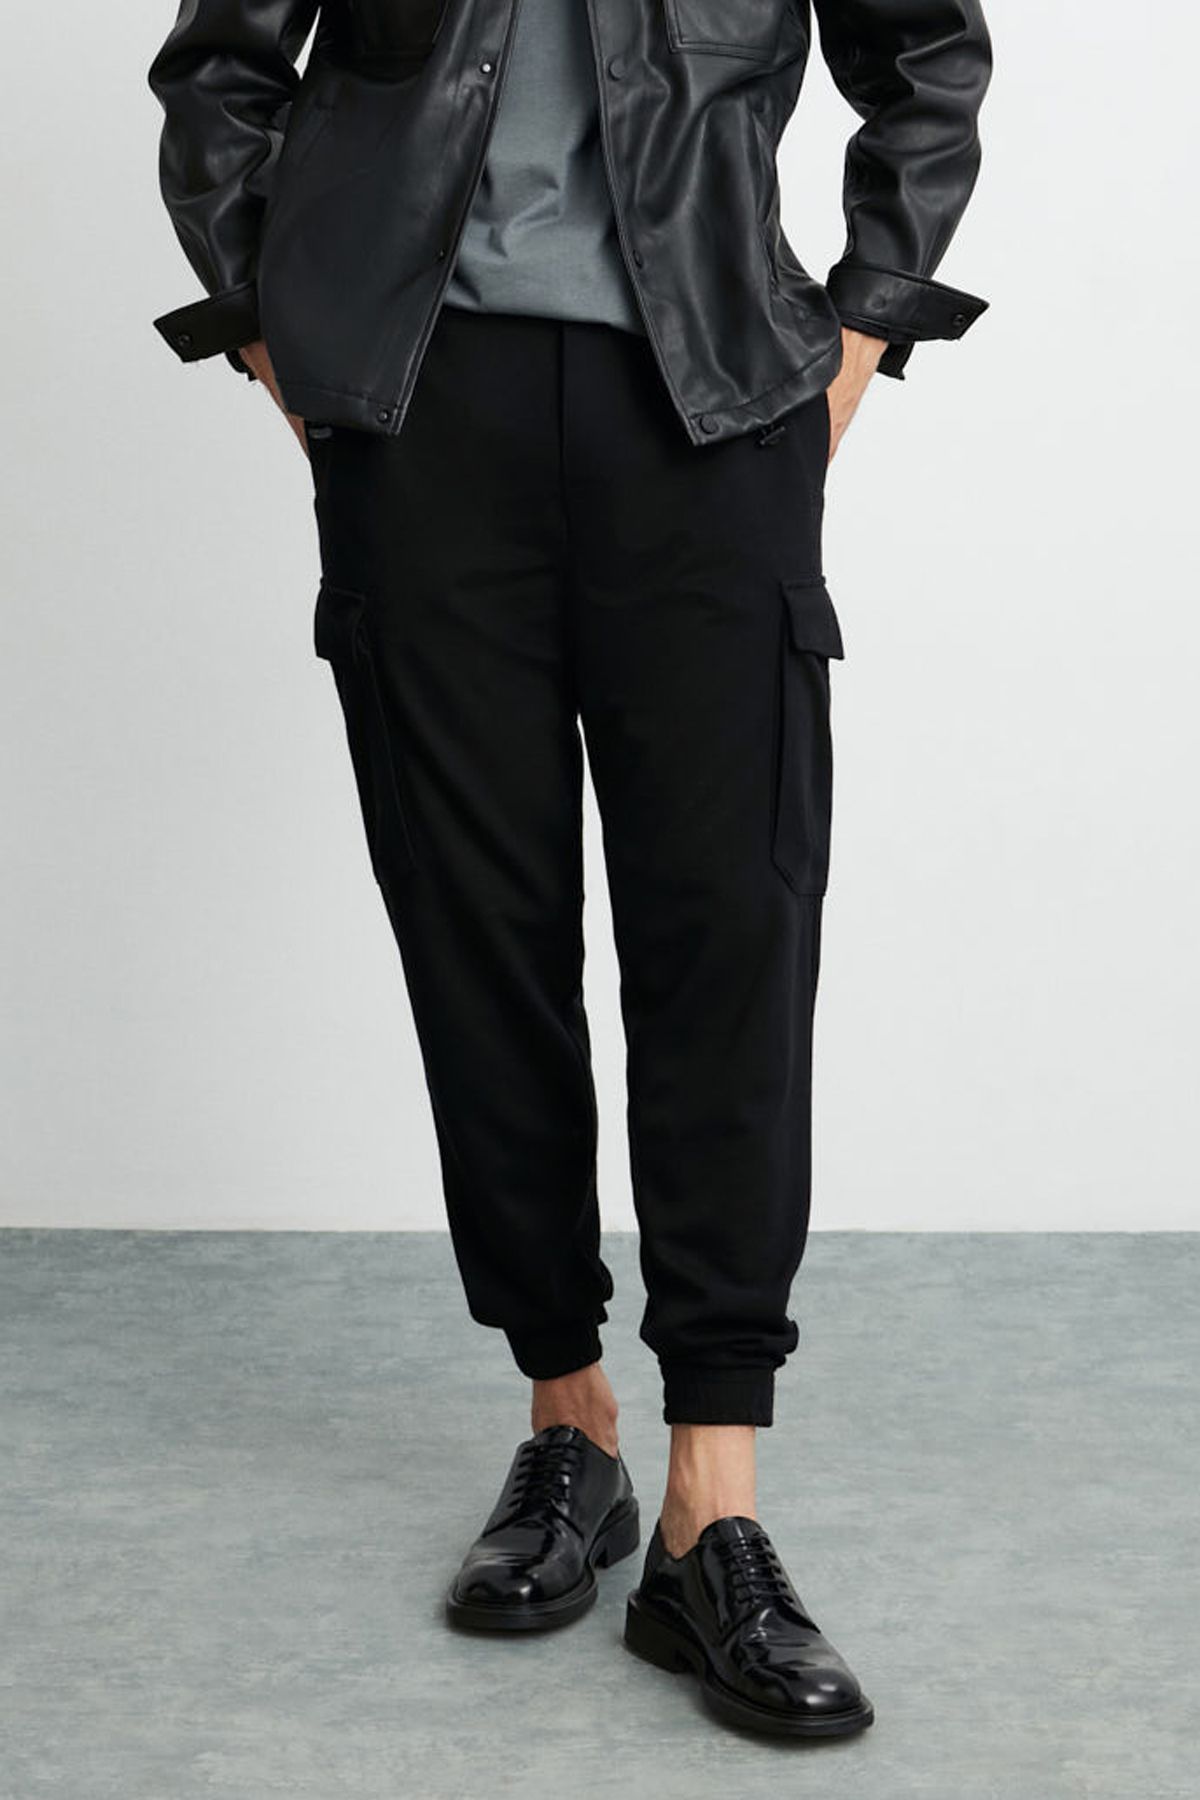 GRIMELANGE Leroy Erkek Kalın Dokulu Kumaşlı Paçası Cırtlı 6 Cepli Geniş Kesim Beli Lastikli Siyah Pantolon